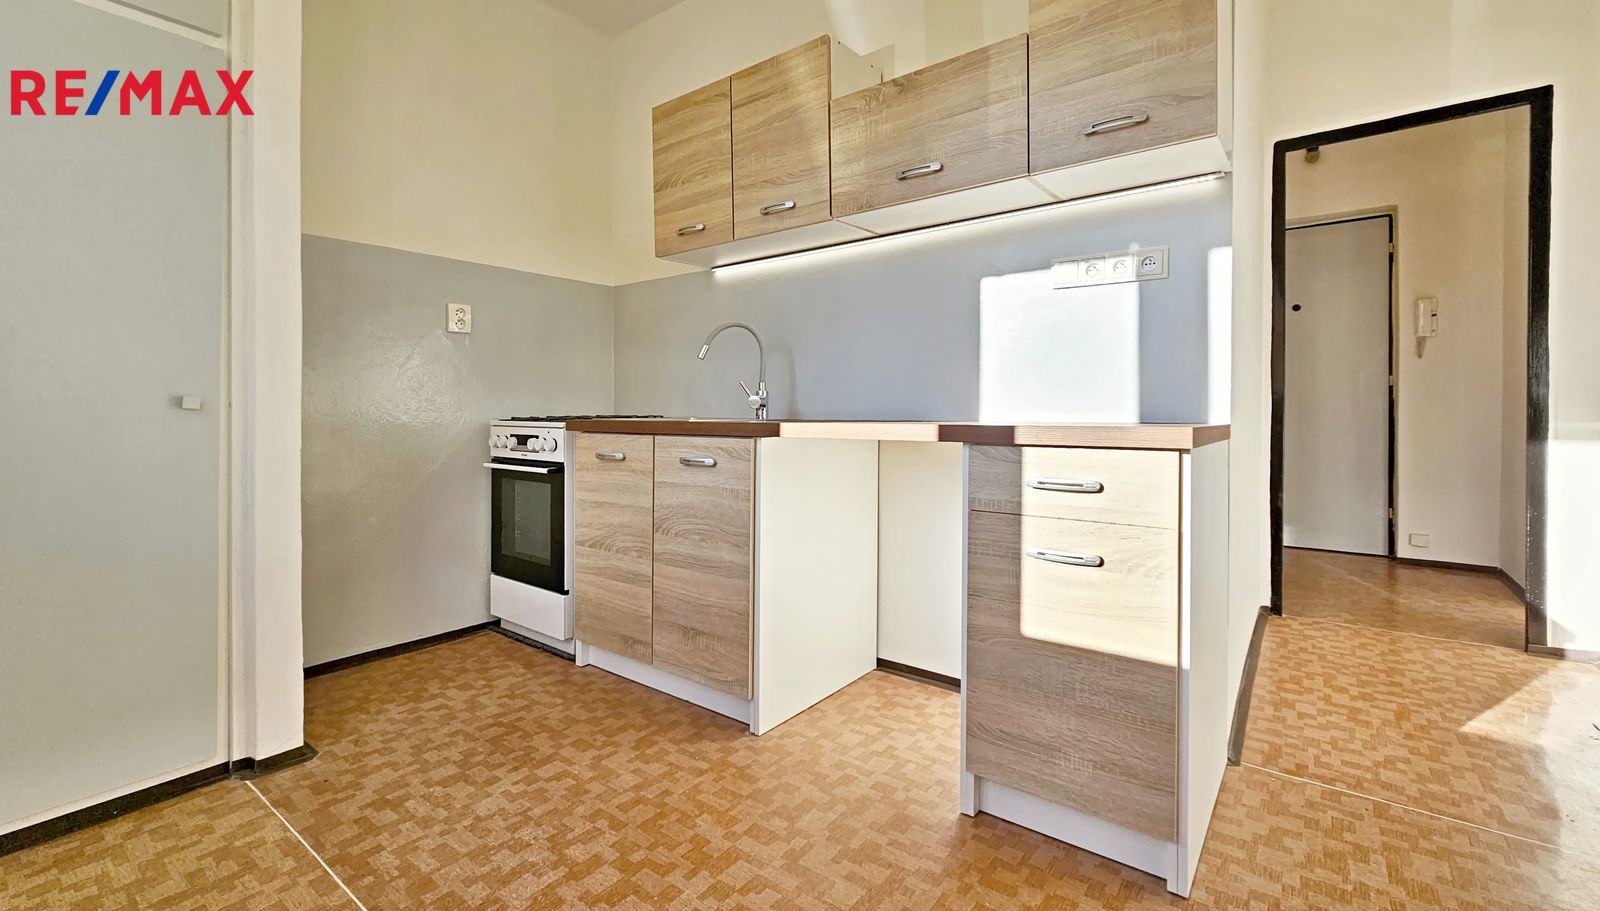 Pronájem bytu 1+1 v družstevním vlastnictví, 35 m2, Mělník